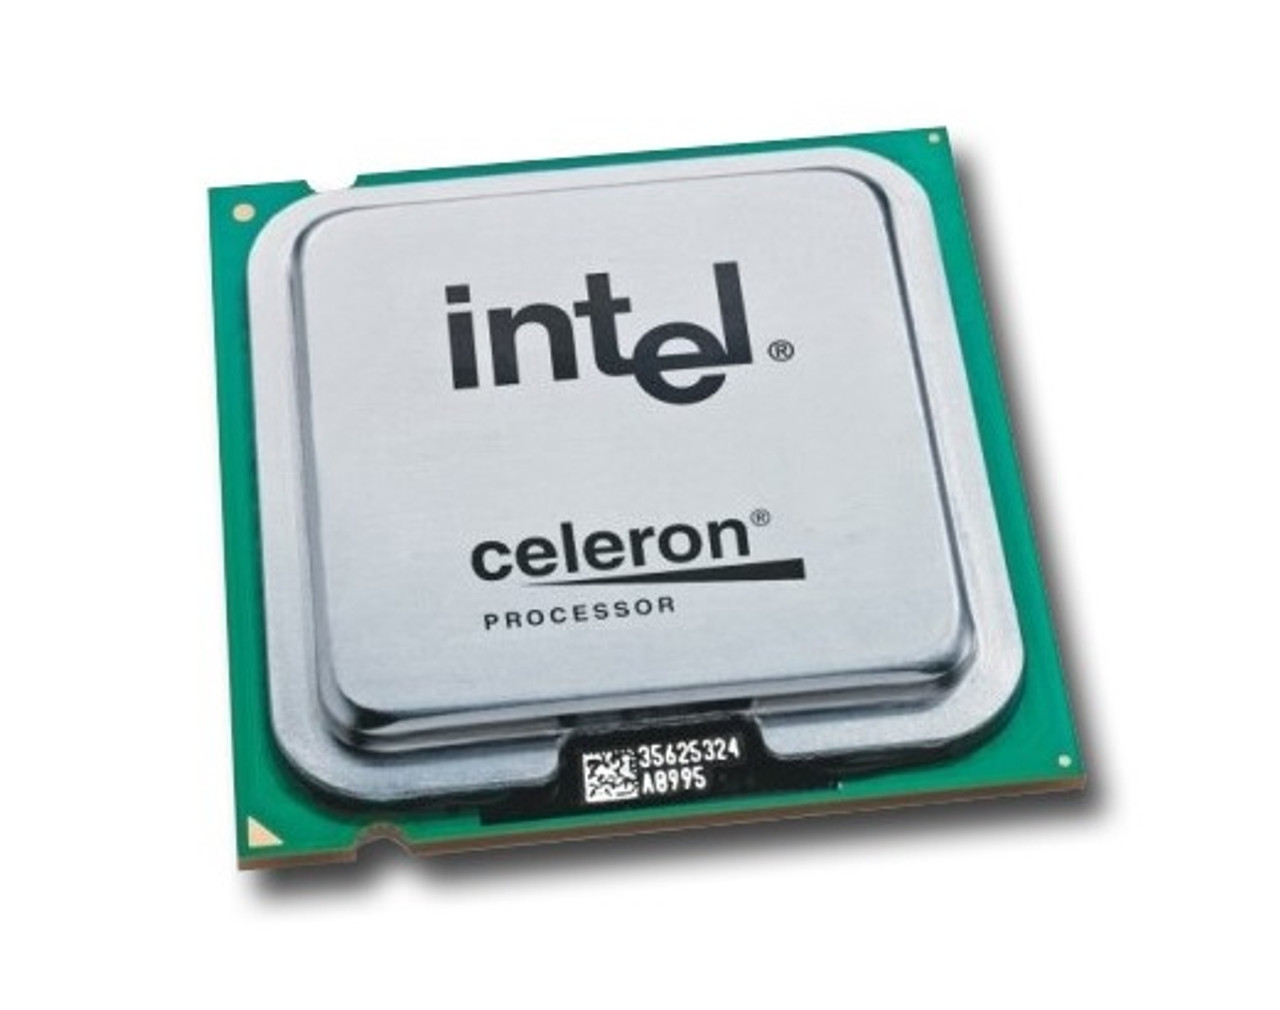 SLA48 - Intel Celeron 530 1.73GHz 533MHz FSB 1MB L2 Cache Socket PPGA478 Mobile Processor